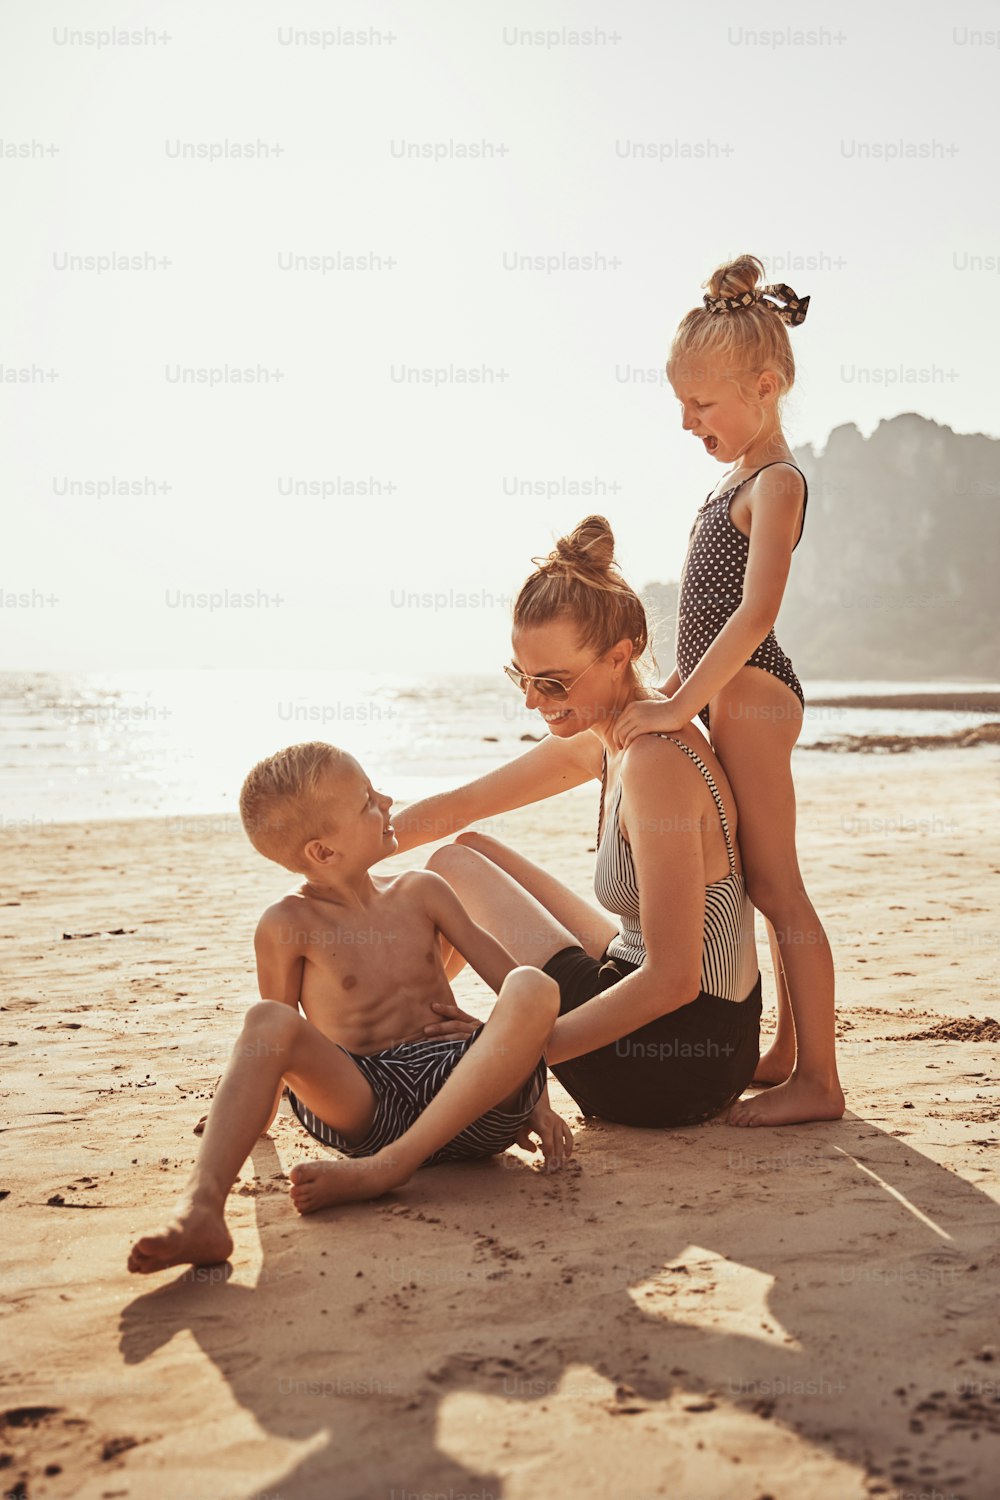 Madre risueña y sus dos adorables hijos sentados juntos en una playa de arena durante las vacaciones de verano